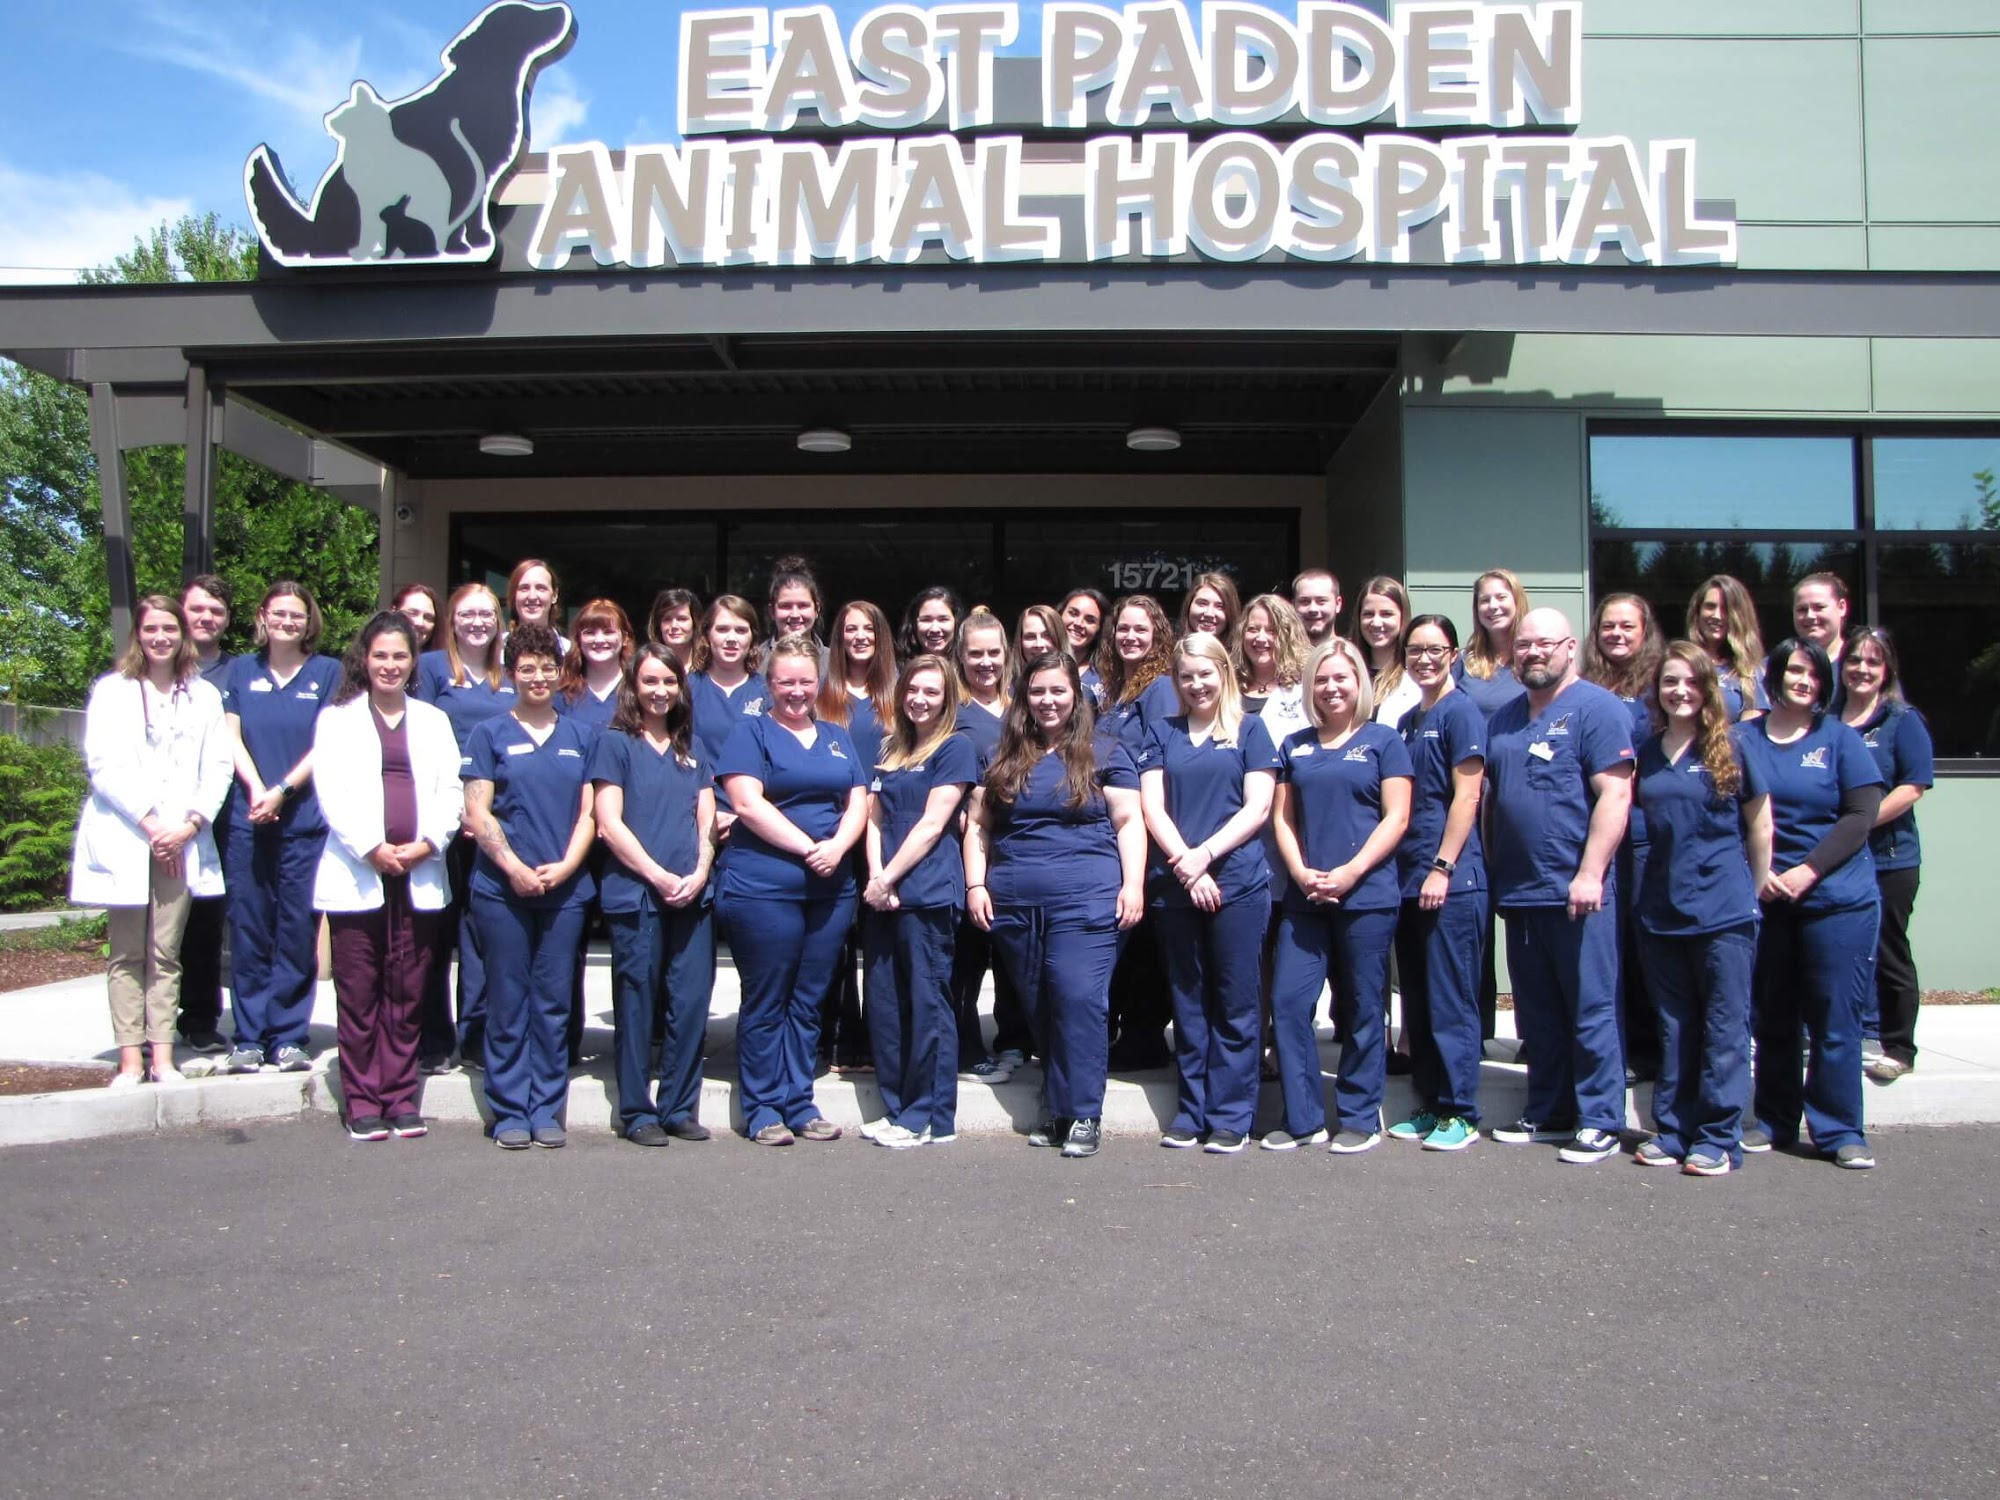 East Padden Animal Hospital